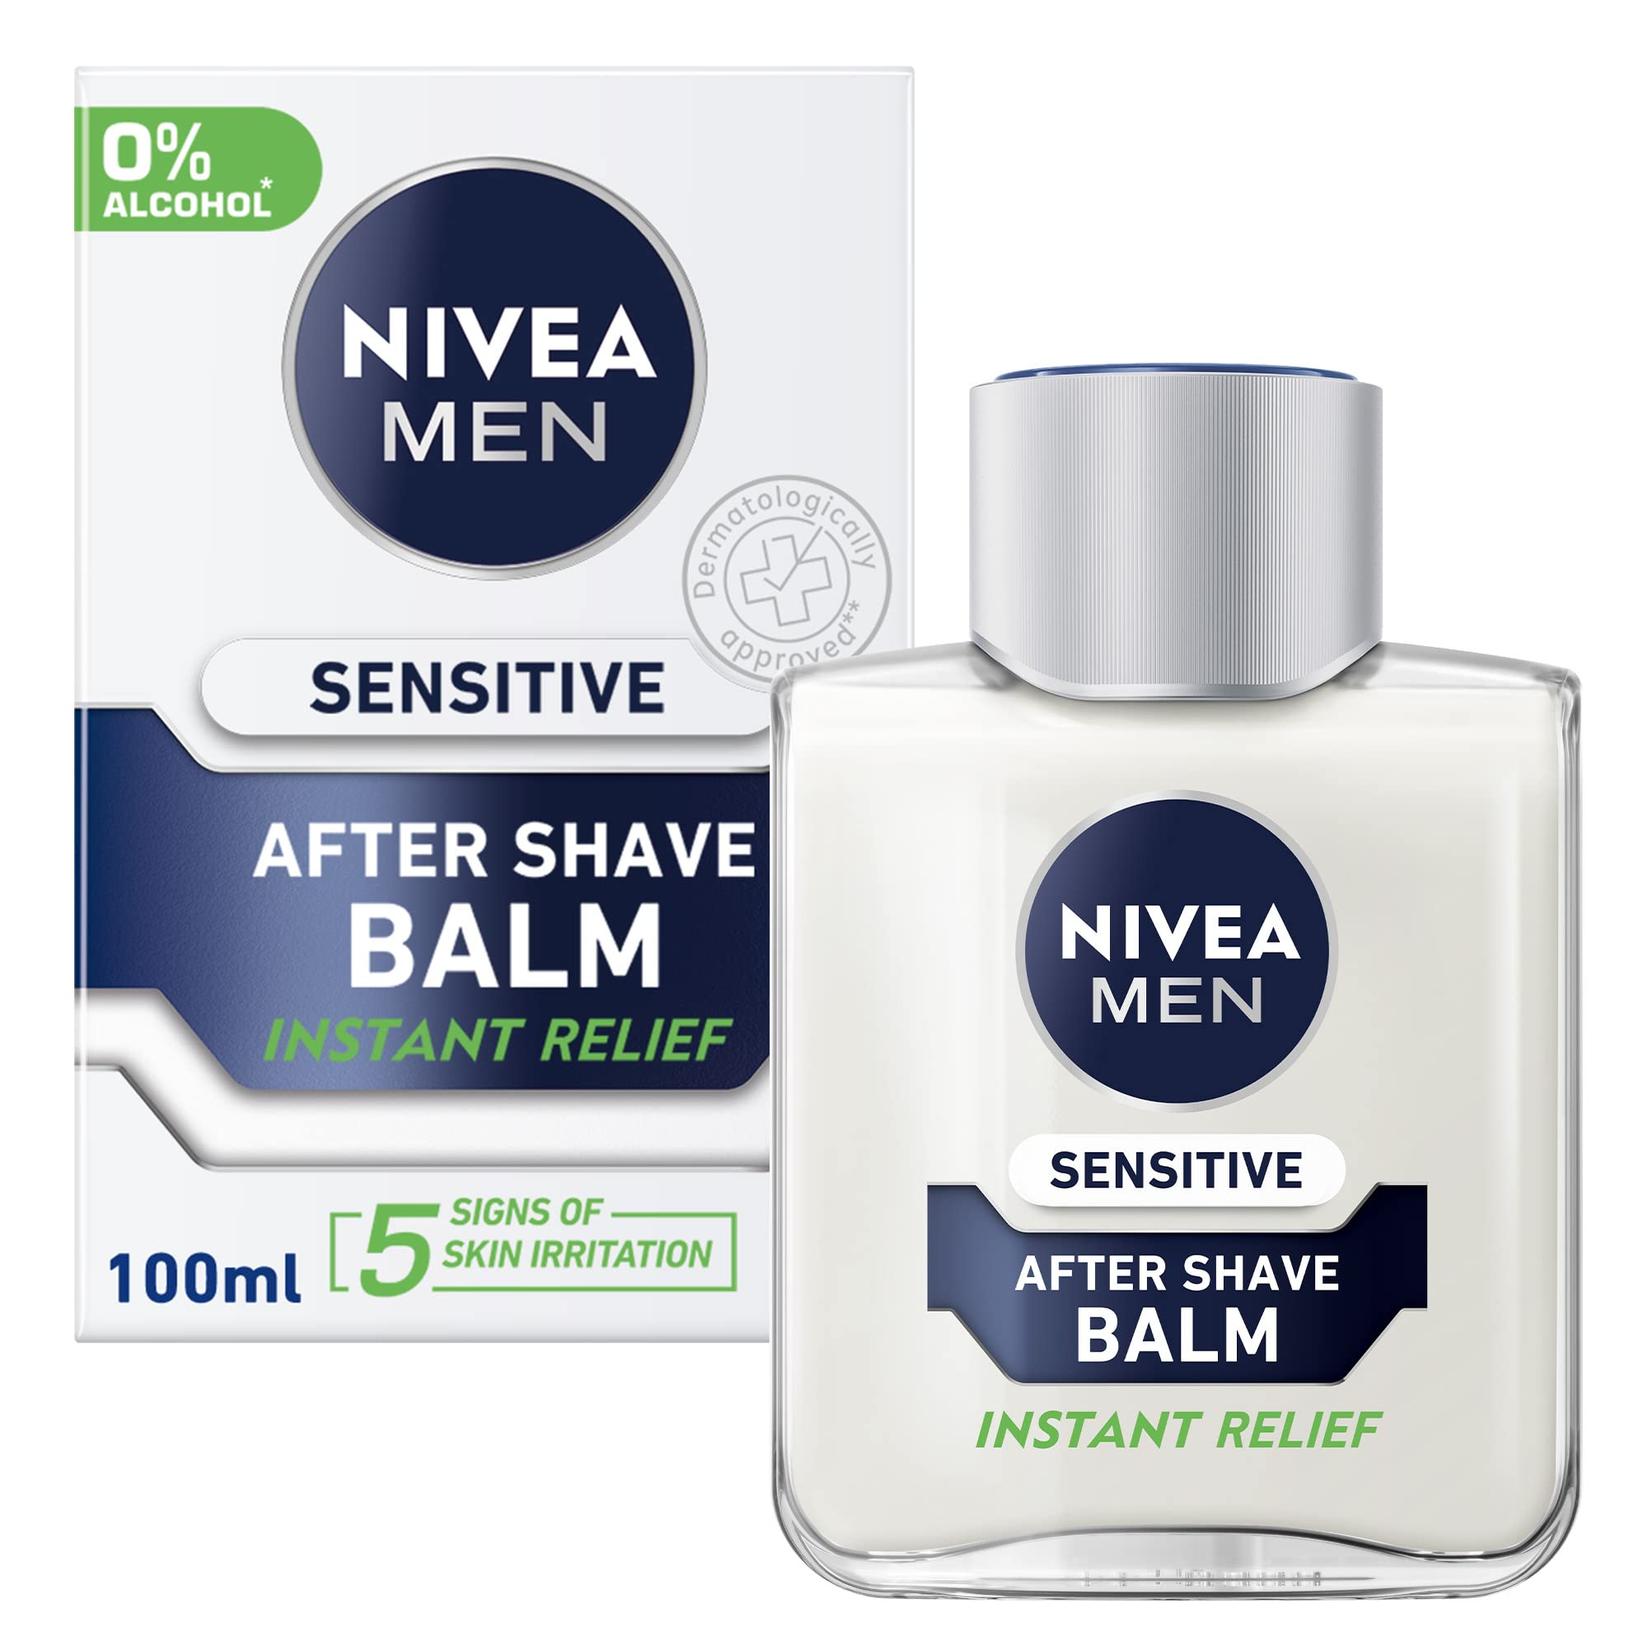 NIVEA MEN Sensitive Balzam posle brijanja, 100ml